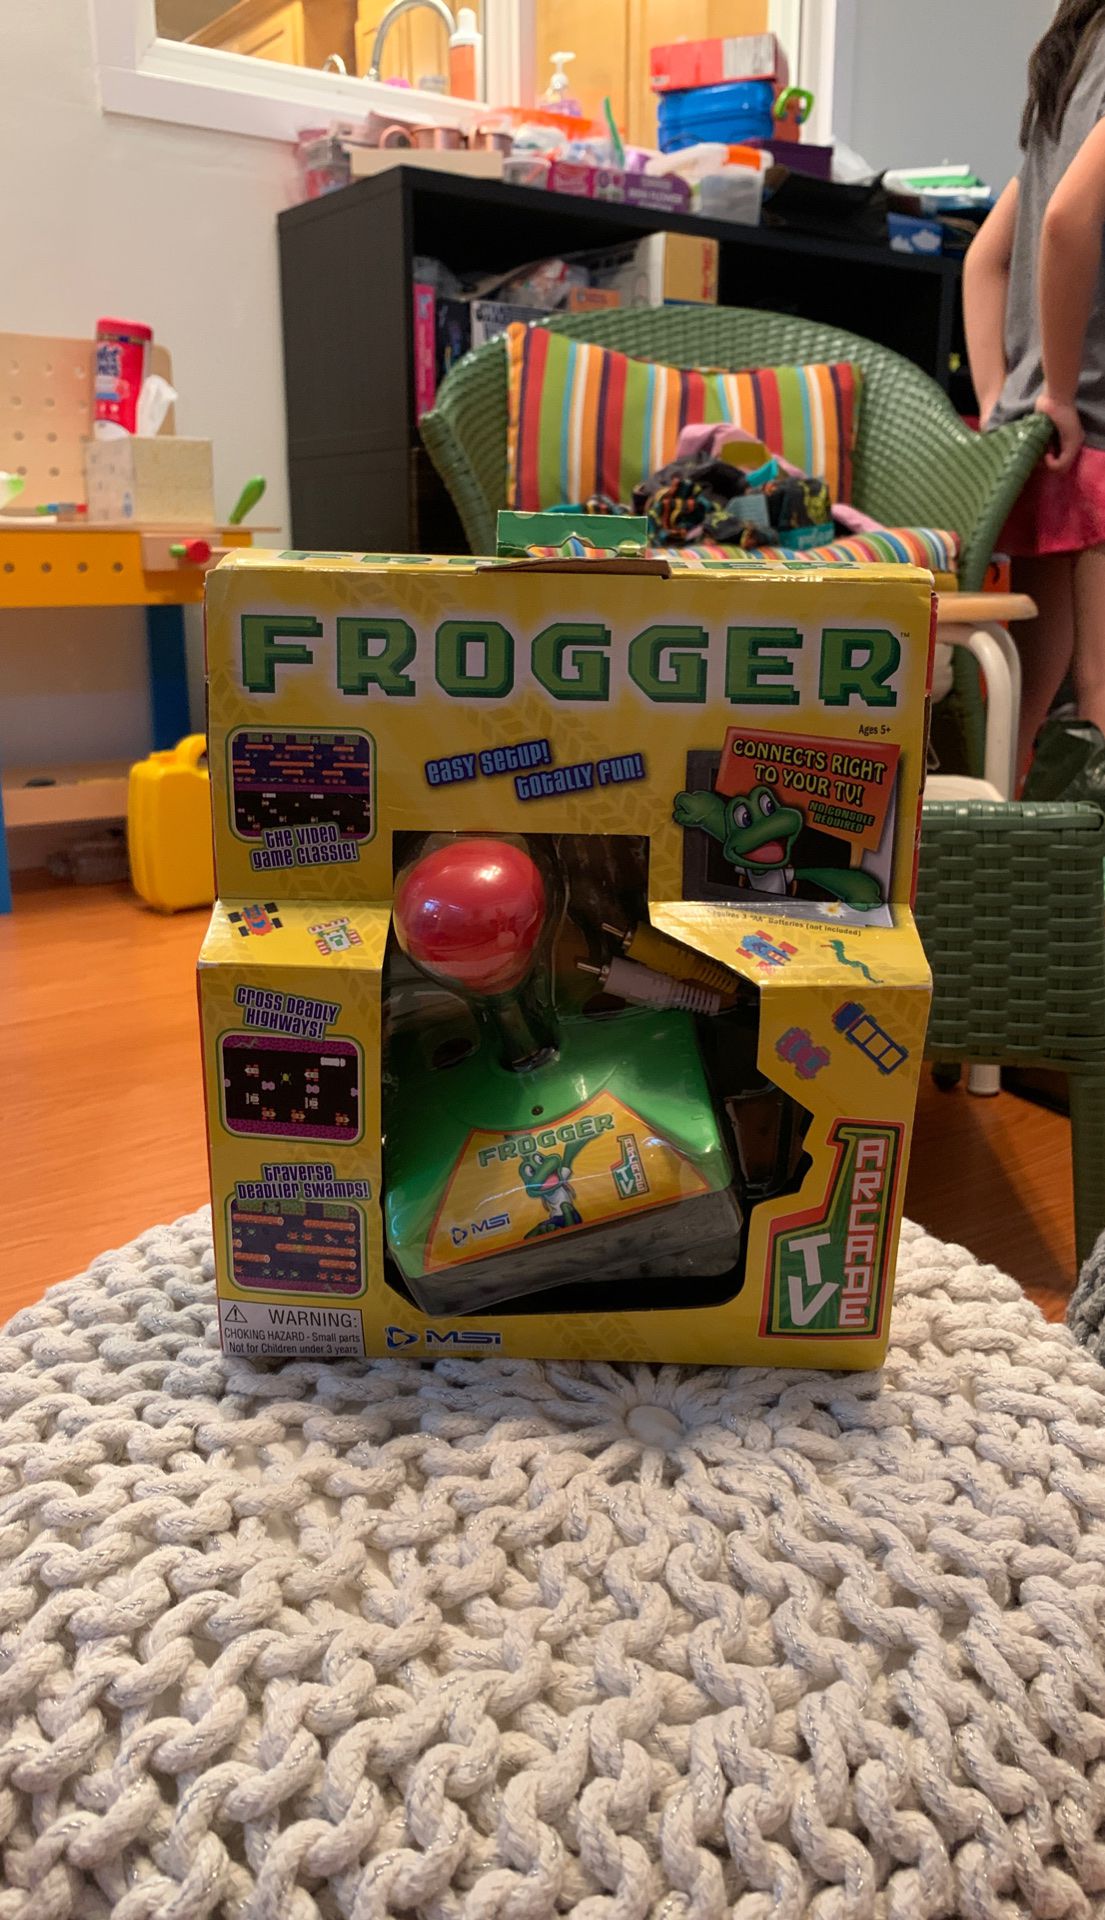 Arcade game Frogger